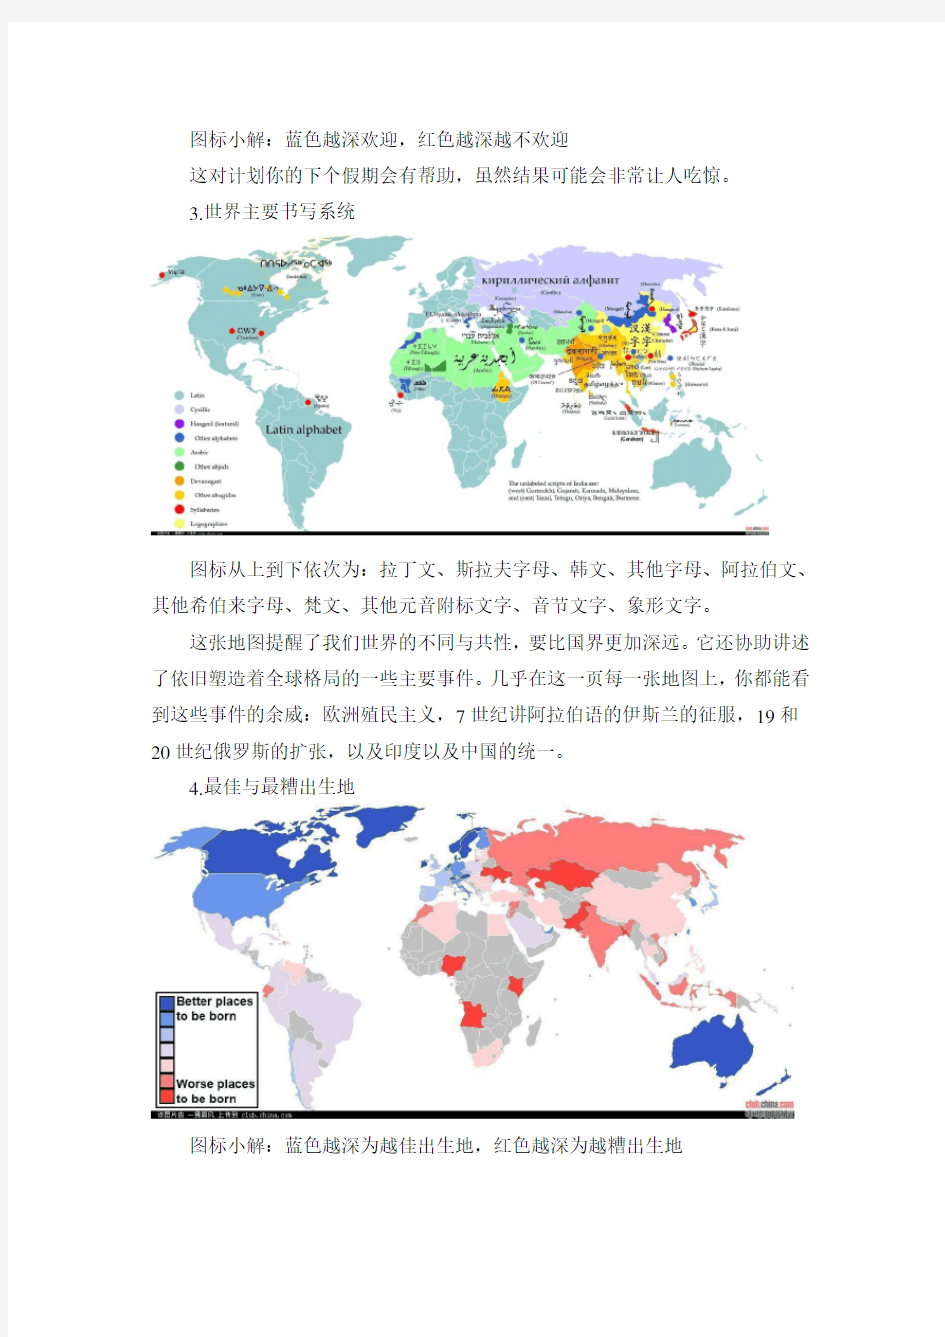 40张地图让你真正读懂全世界解析